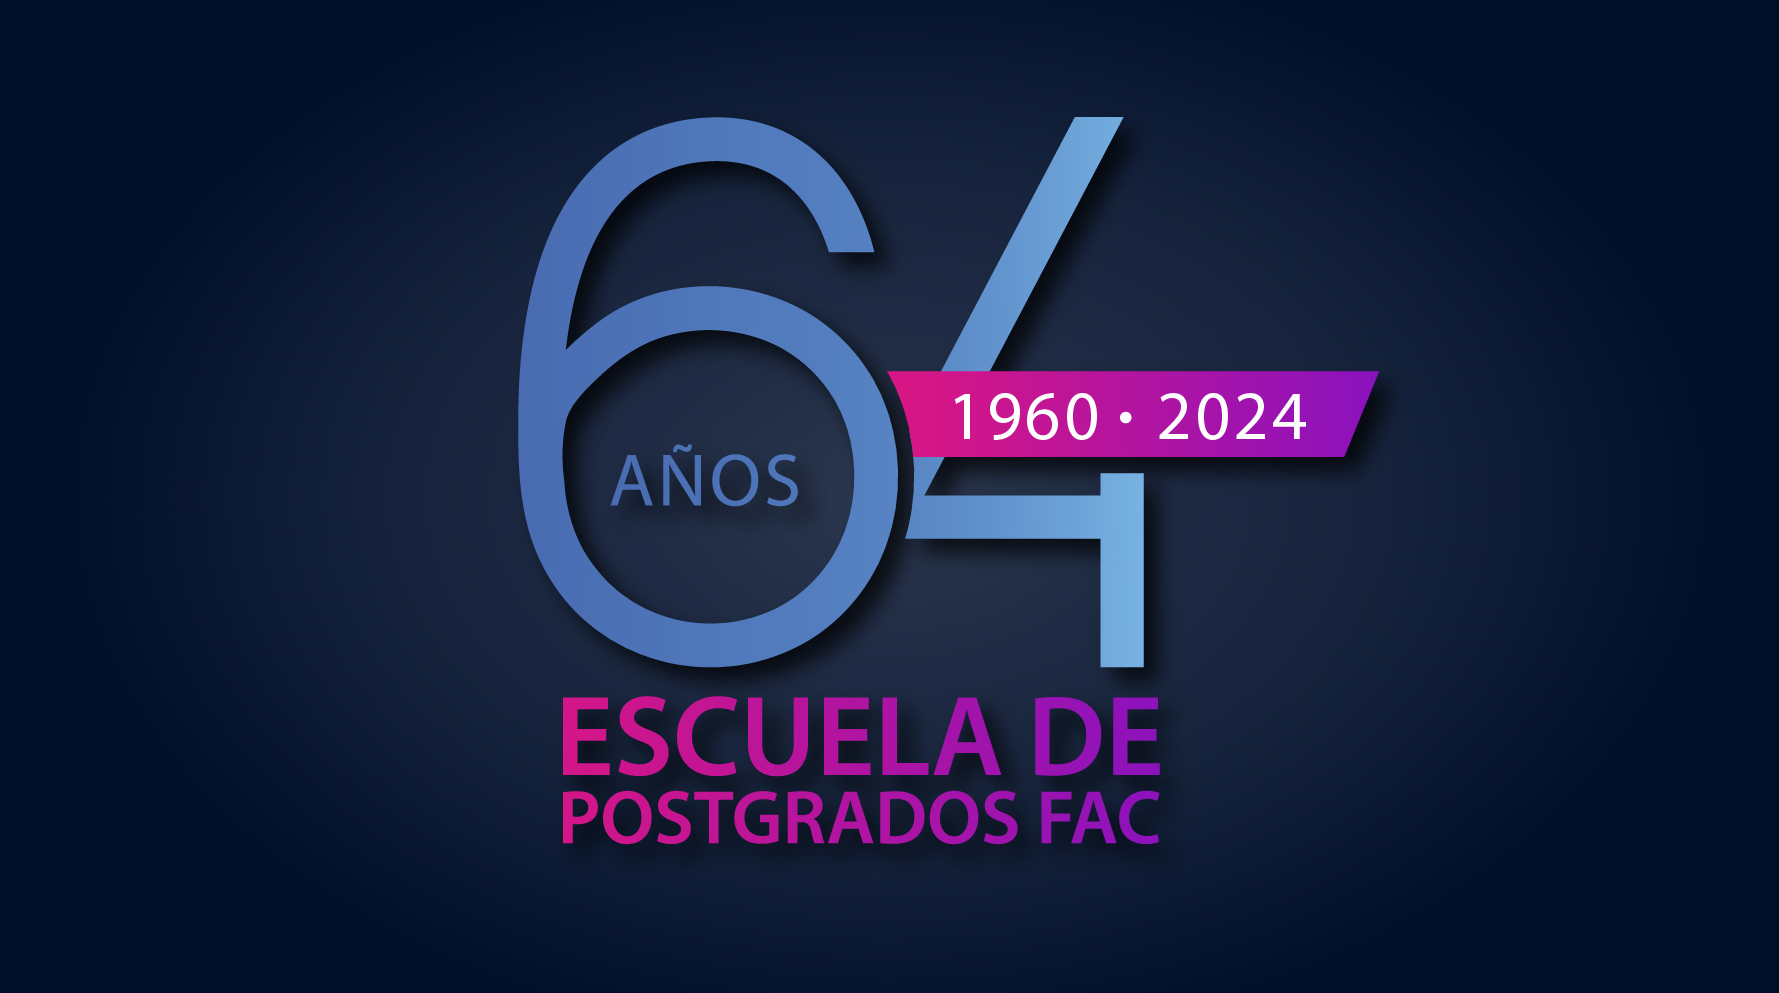 Escuela de Postgrados 63 años Epfac